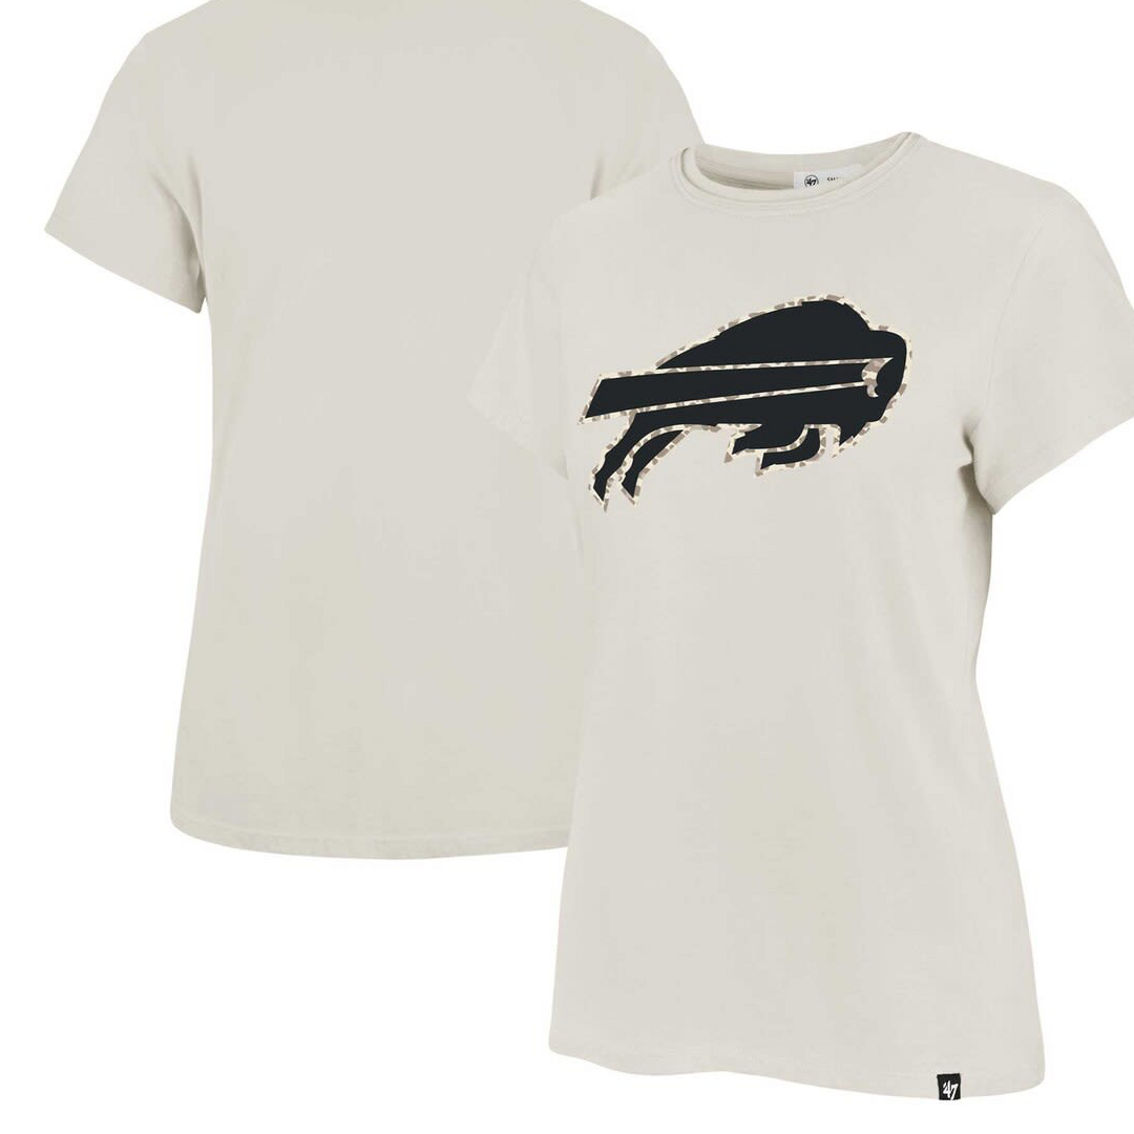 '47 Women's Cream Buffalo Bills Panthera Frankie T-Shirt - Image 2 of 2